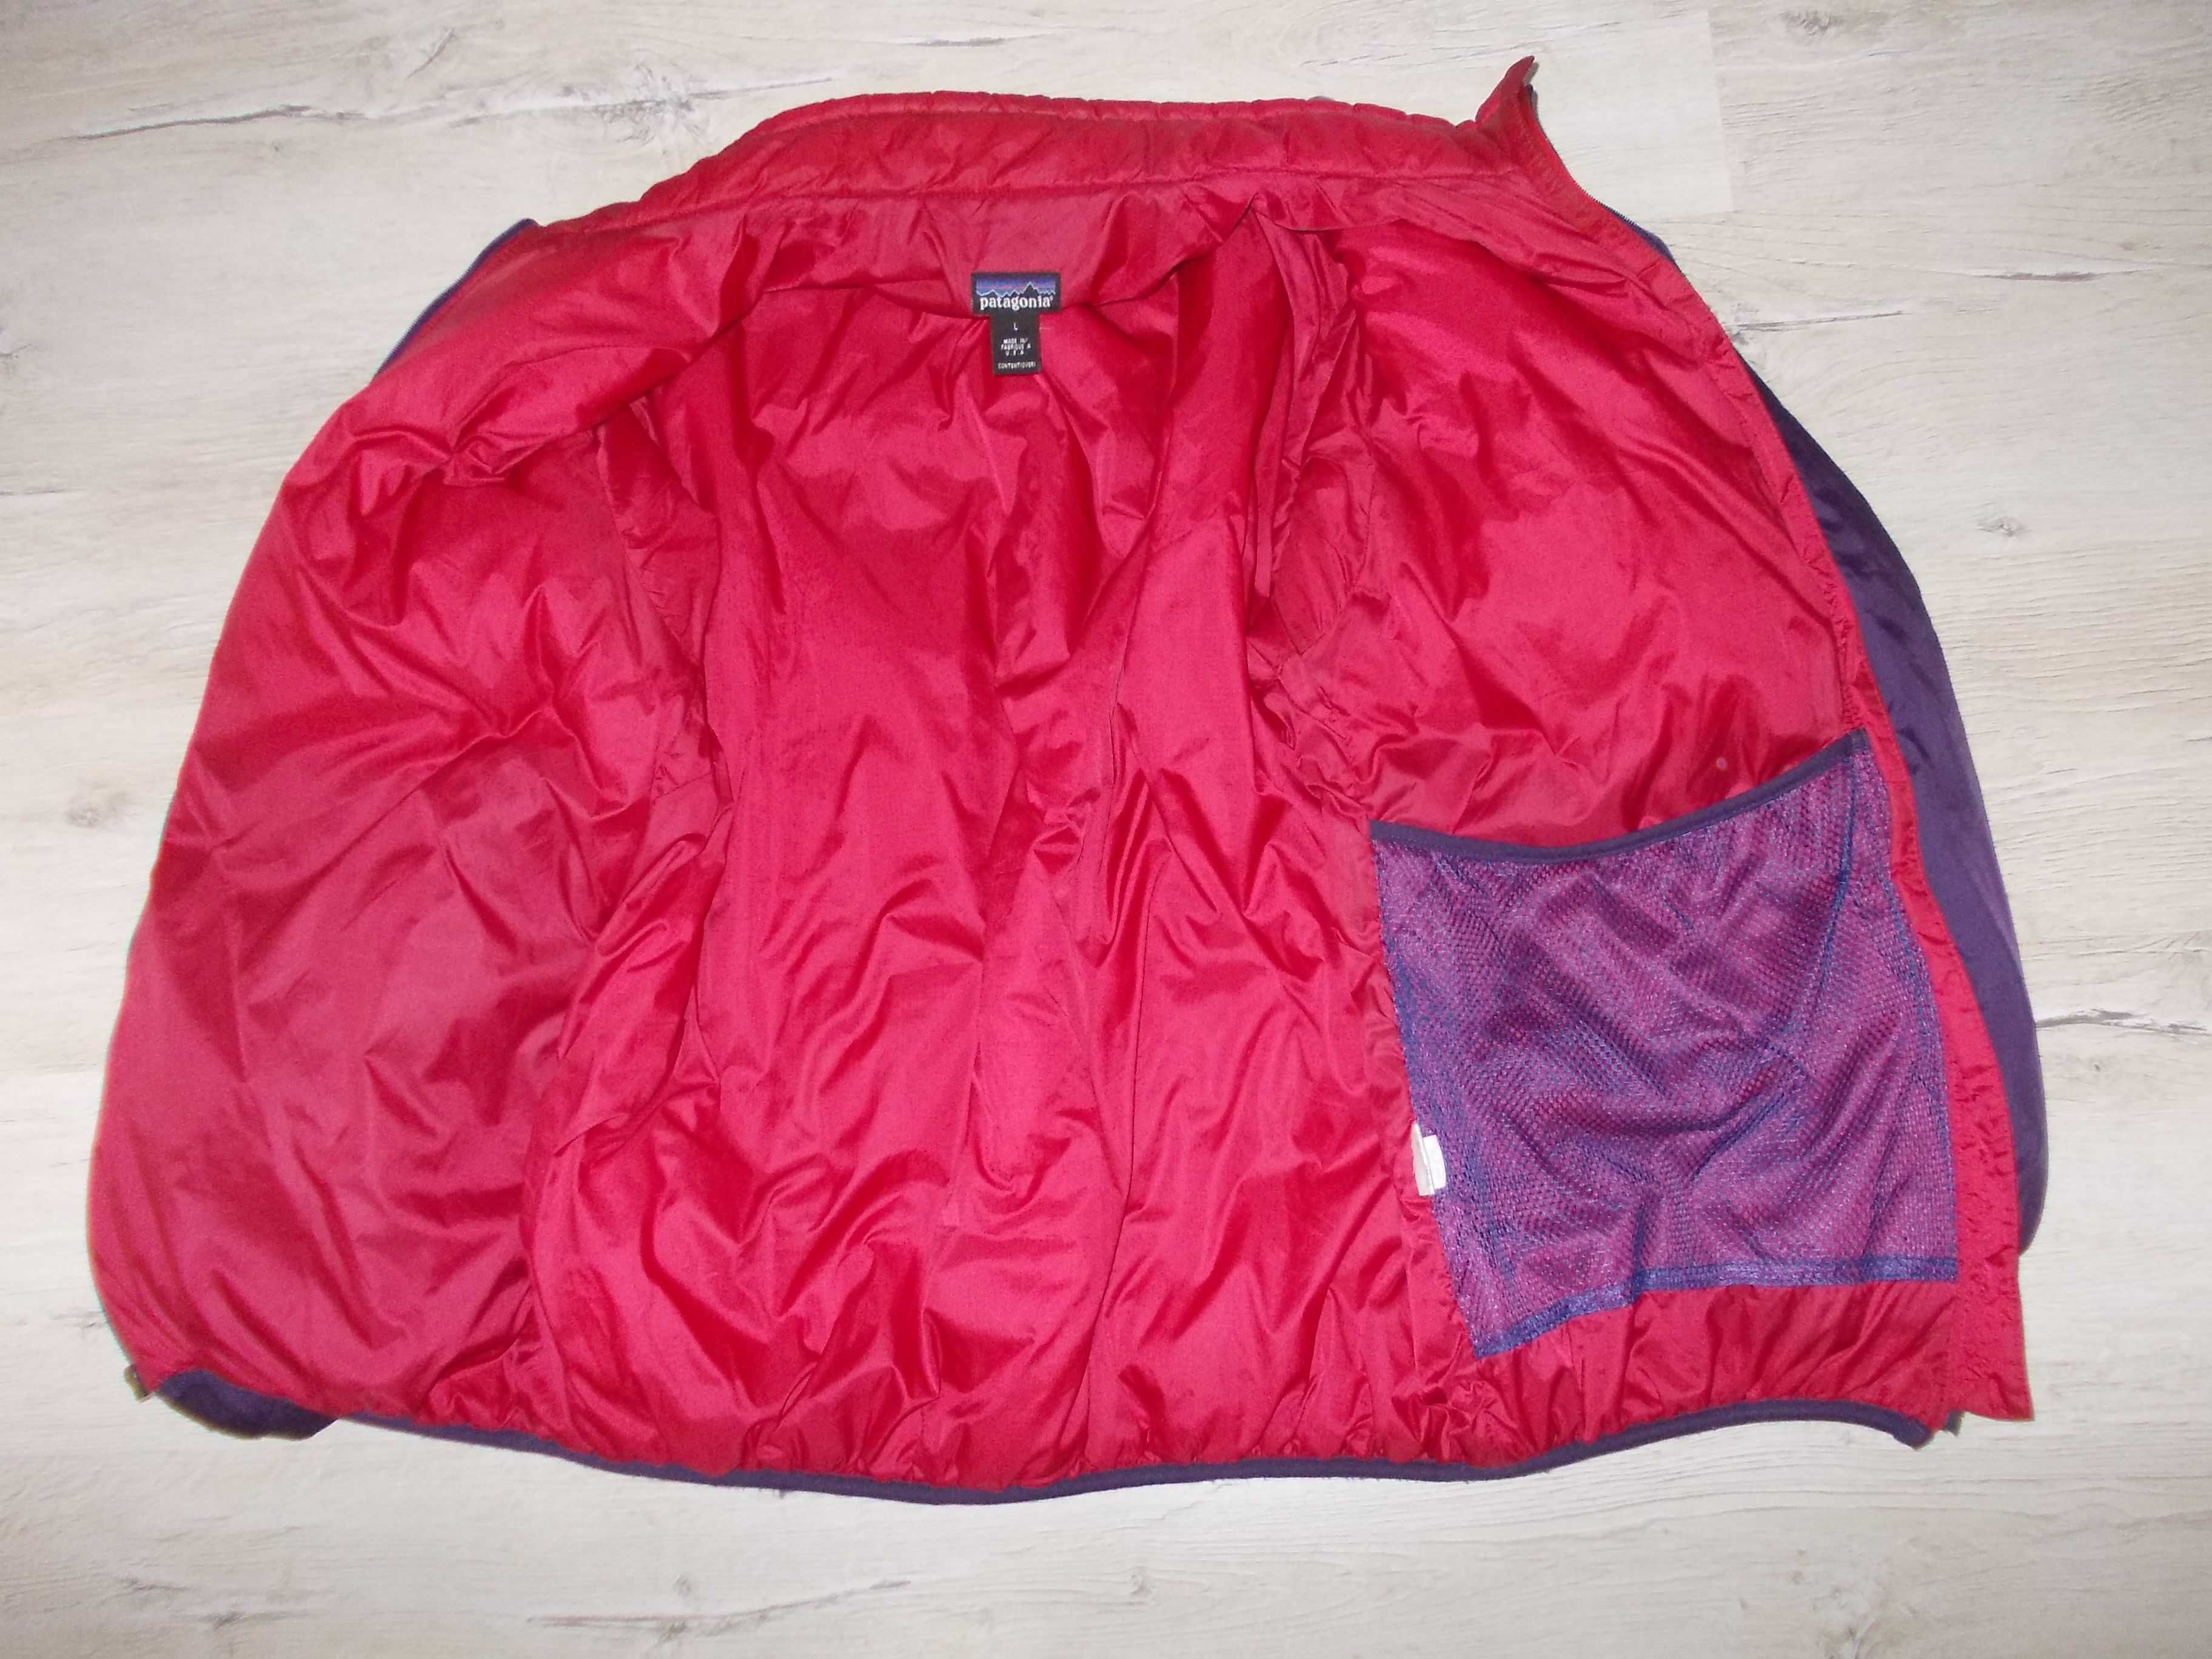 Geacă Patagonia - Nike, puf W 550 / Jacketă-Bluzon - Polar Colmar